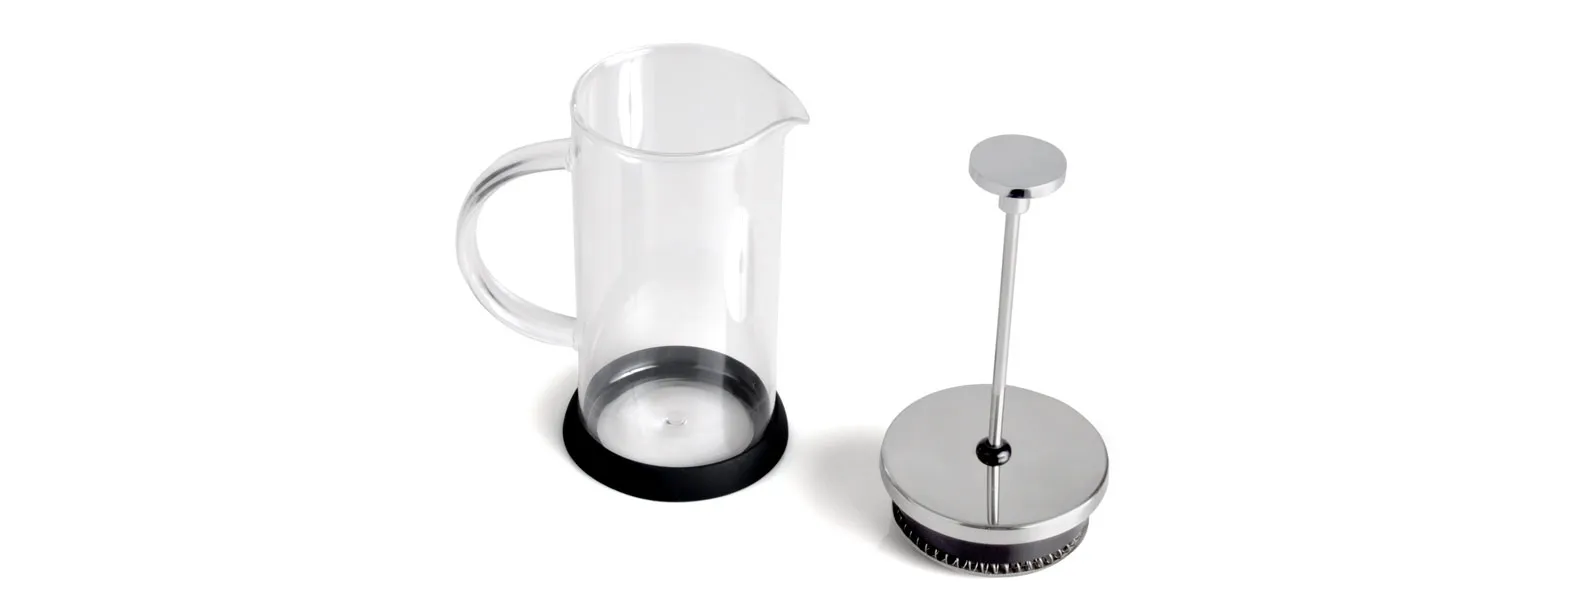 Cafeteira prensa francesa em vidro, duas xícaras com pires em vidro, duas colheres em inox e uma colher em bambu de 18 cm.